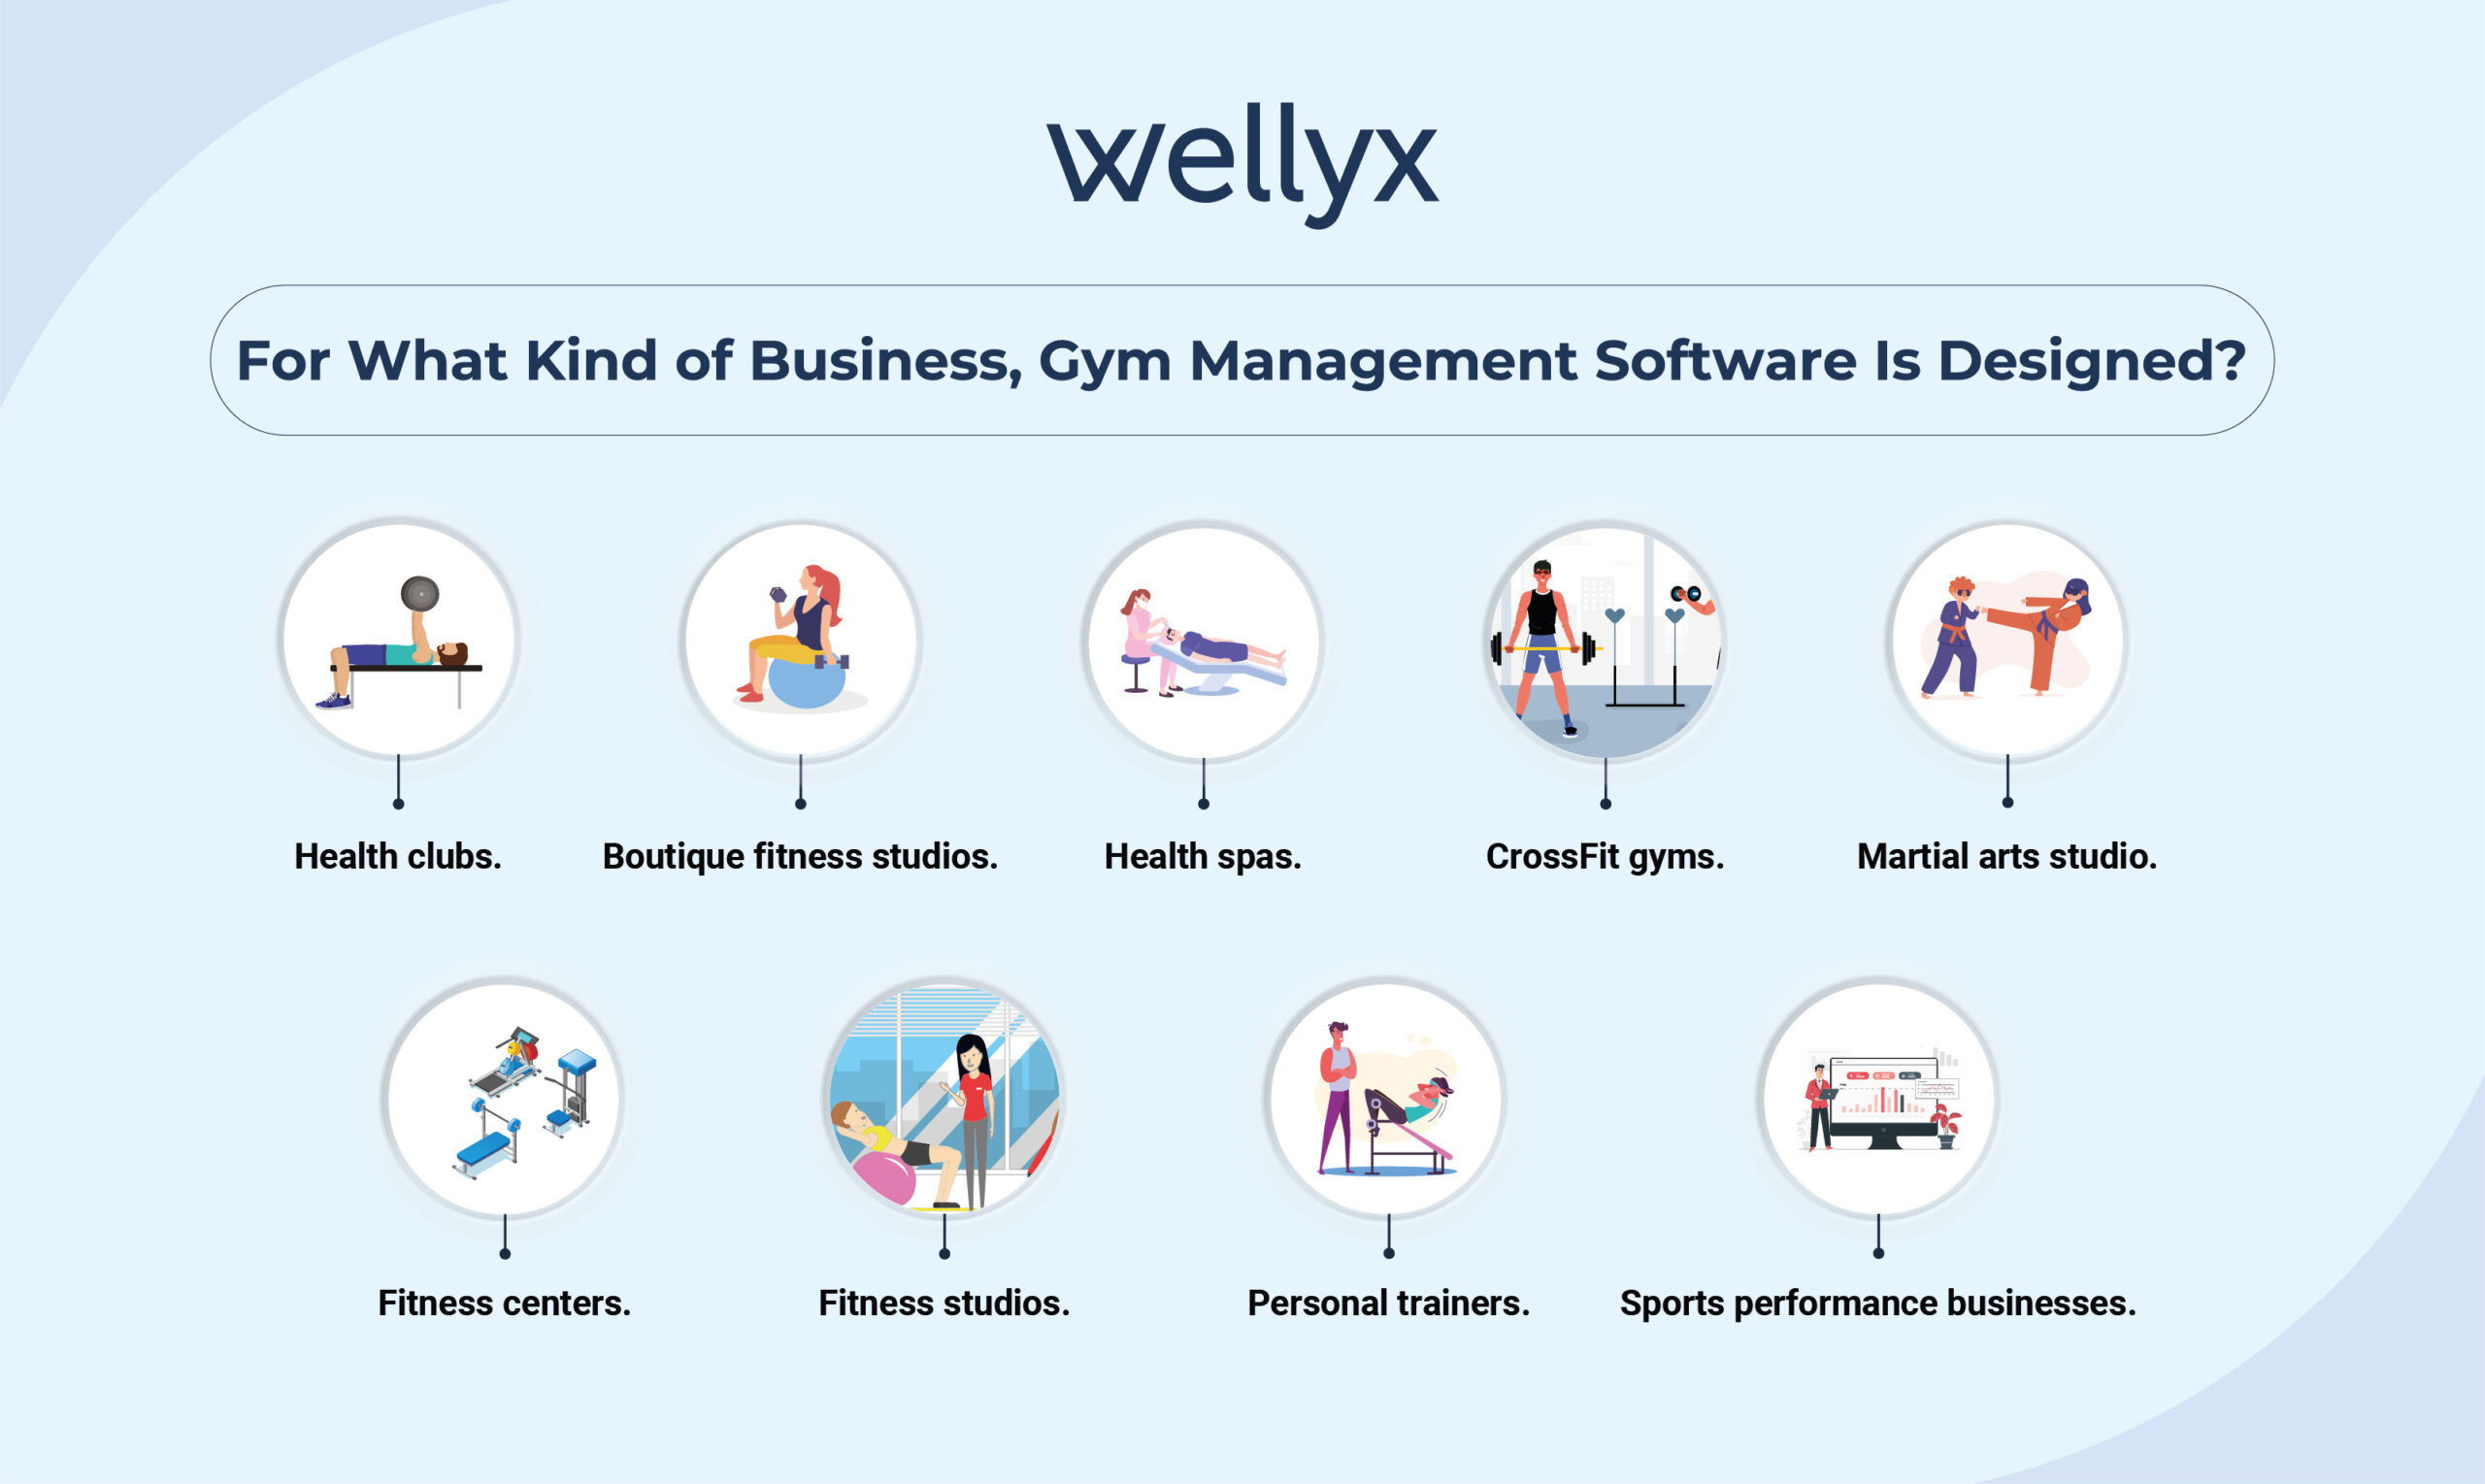 Gym Management Software Is Designed